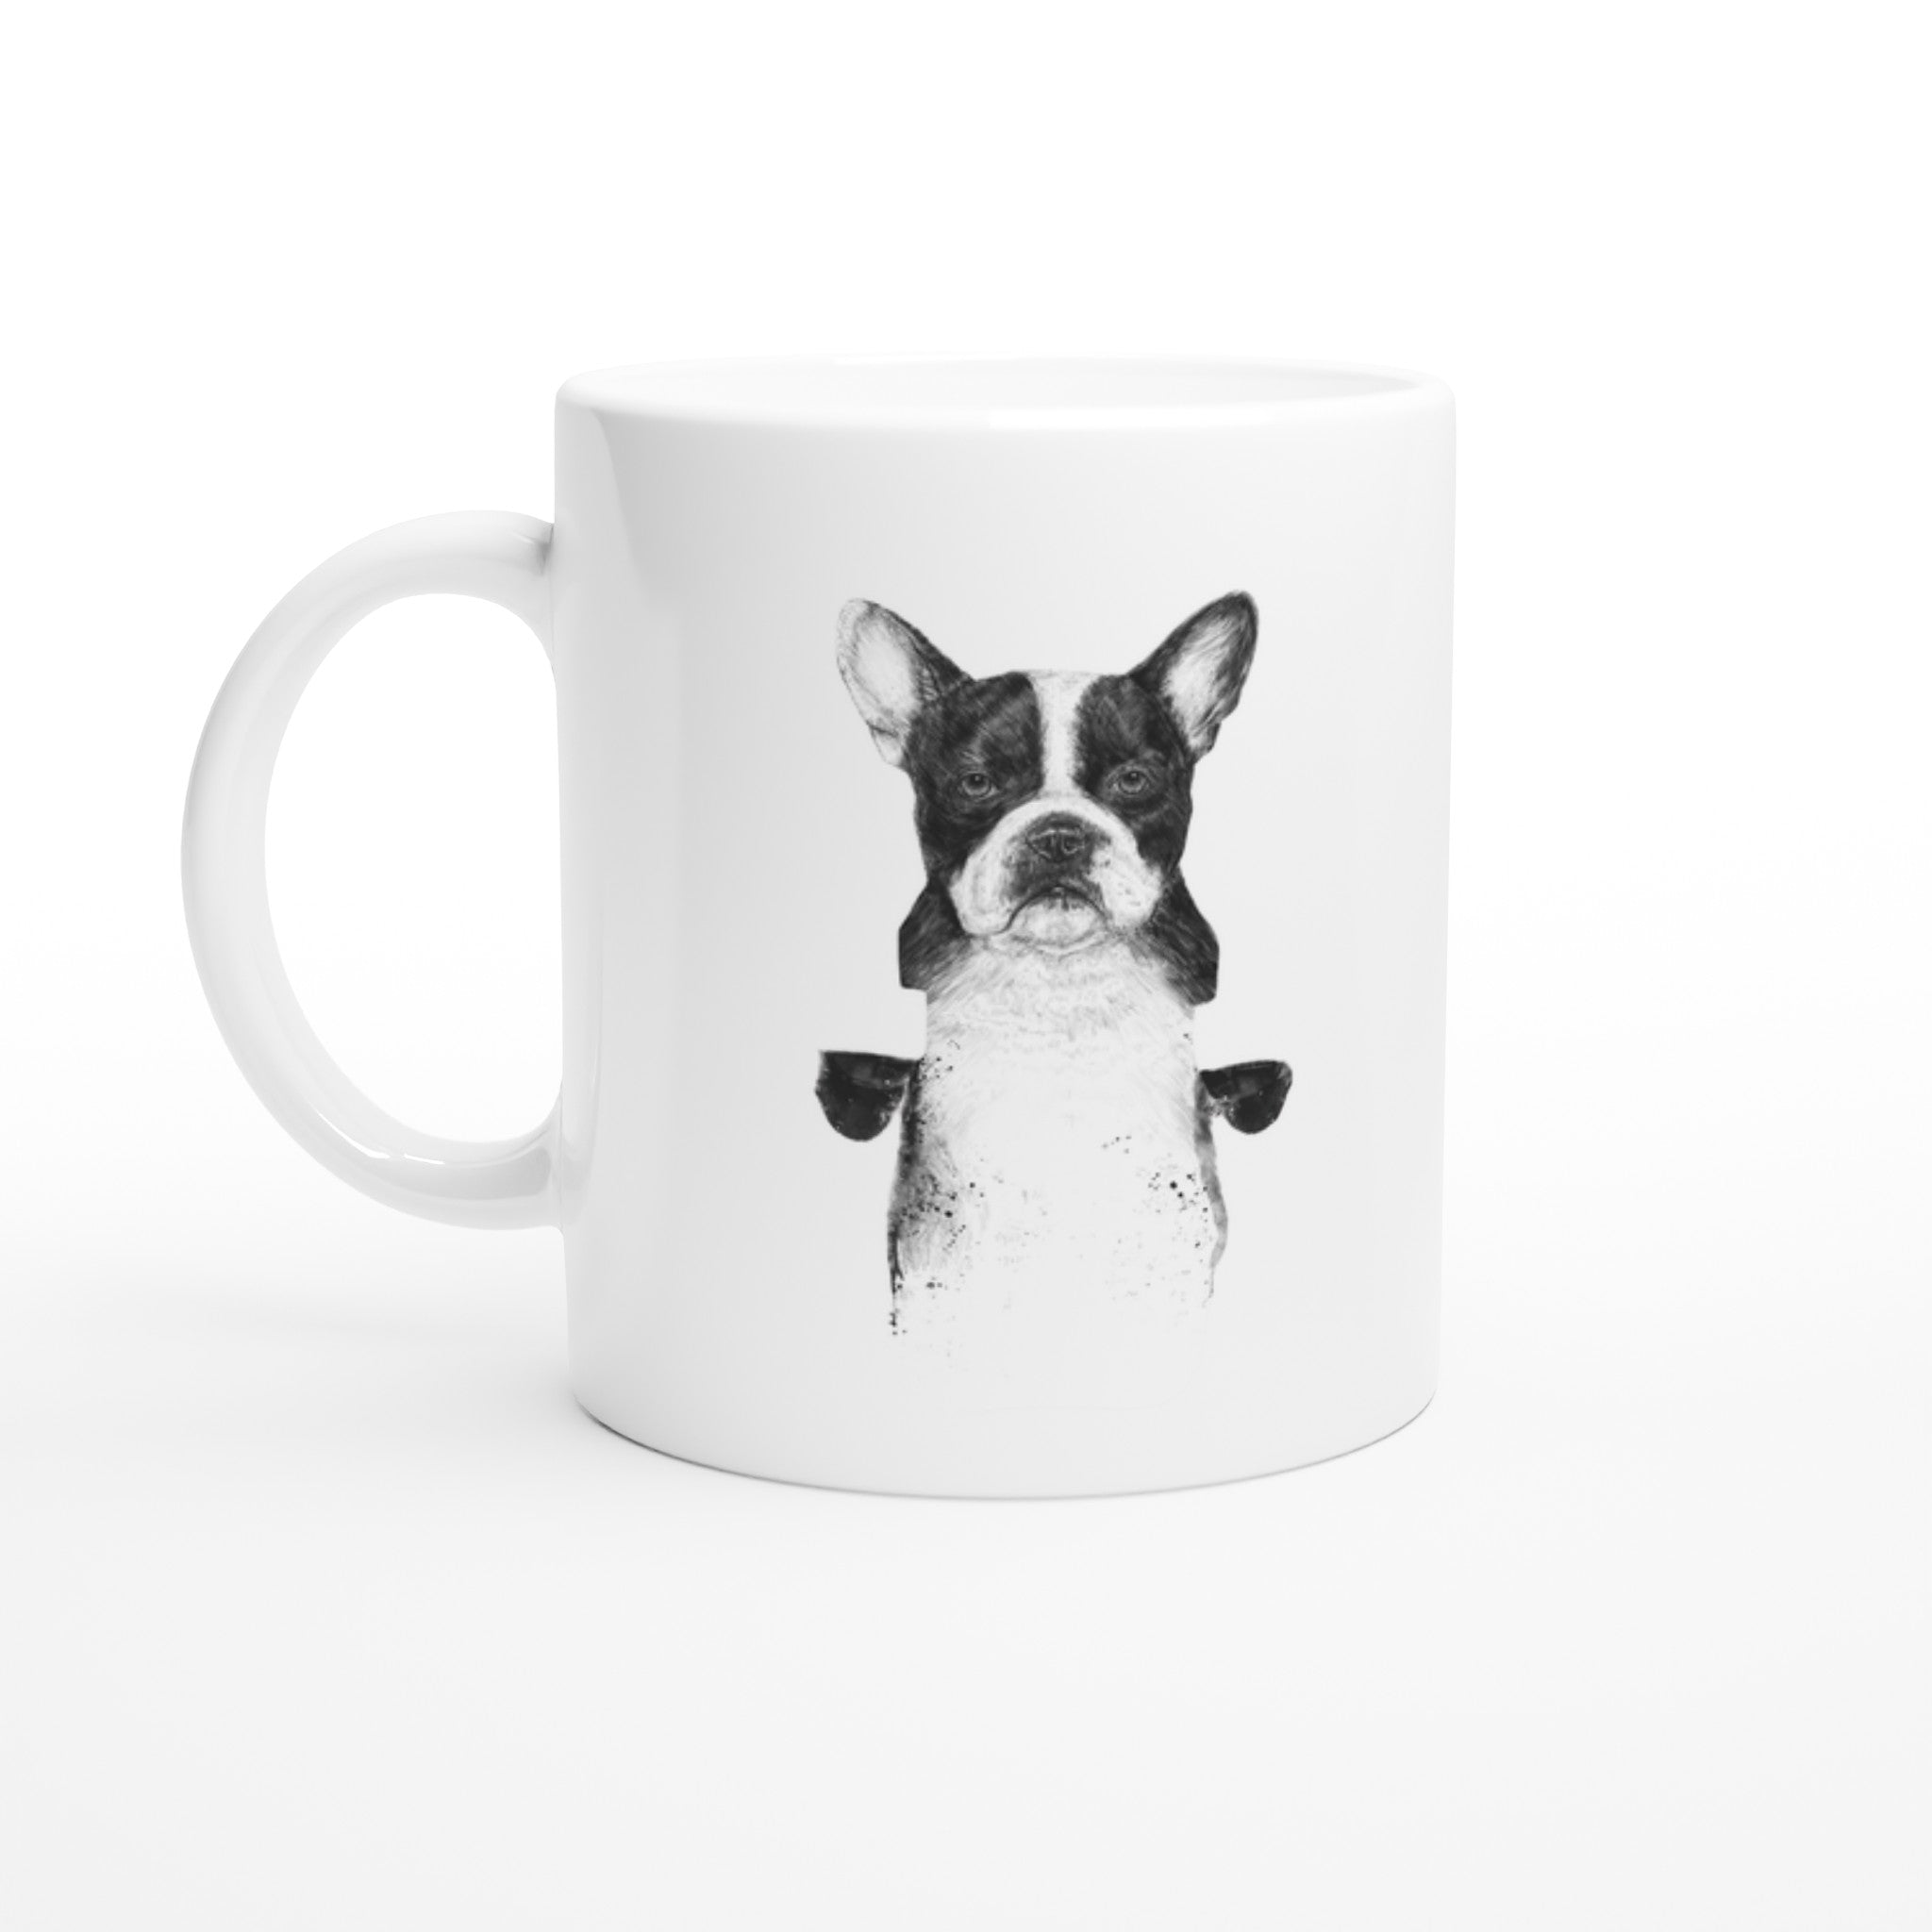 Censored Dog Mug - Optimalprint